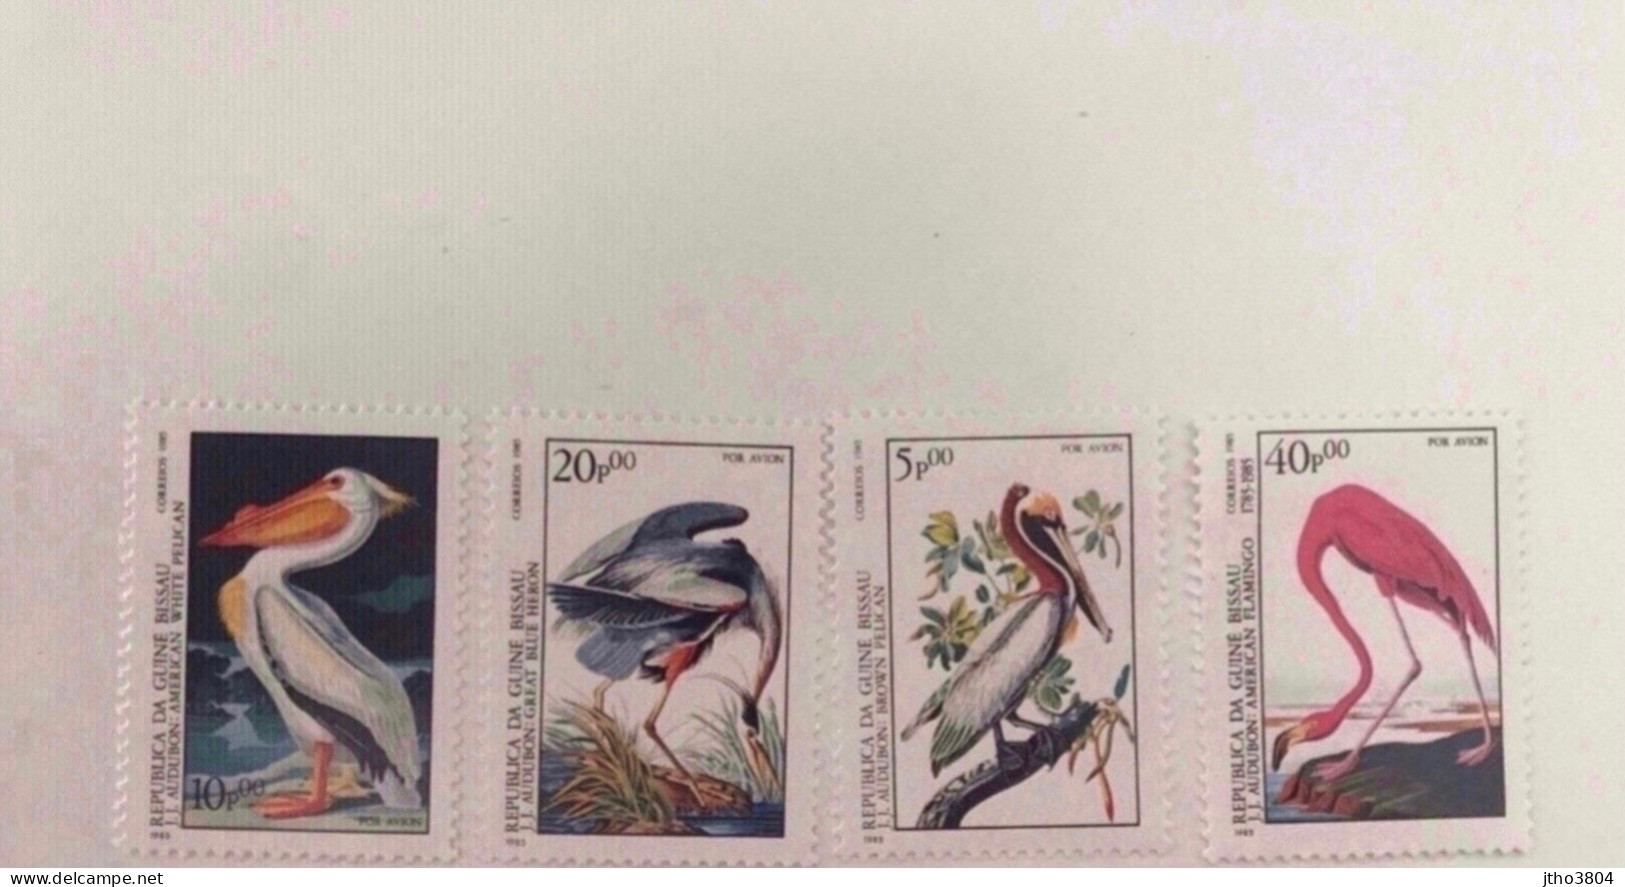 GUINÉE BISSAU 1985 AUDUBON 4 V Neuf ** MNH Aerien Airmail YT PA 84 87 Ucello Oiseau Bird Pájaro Vogel GUINE GUINEA - Pelicans